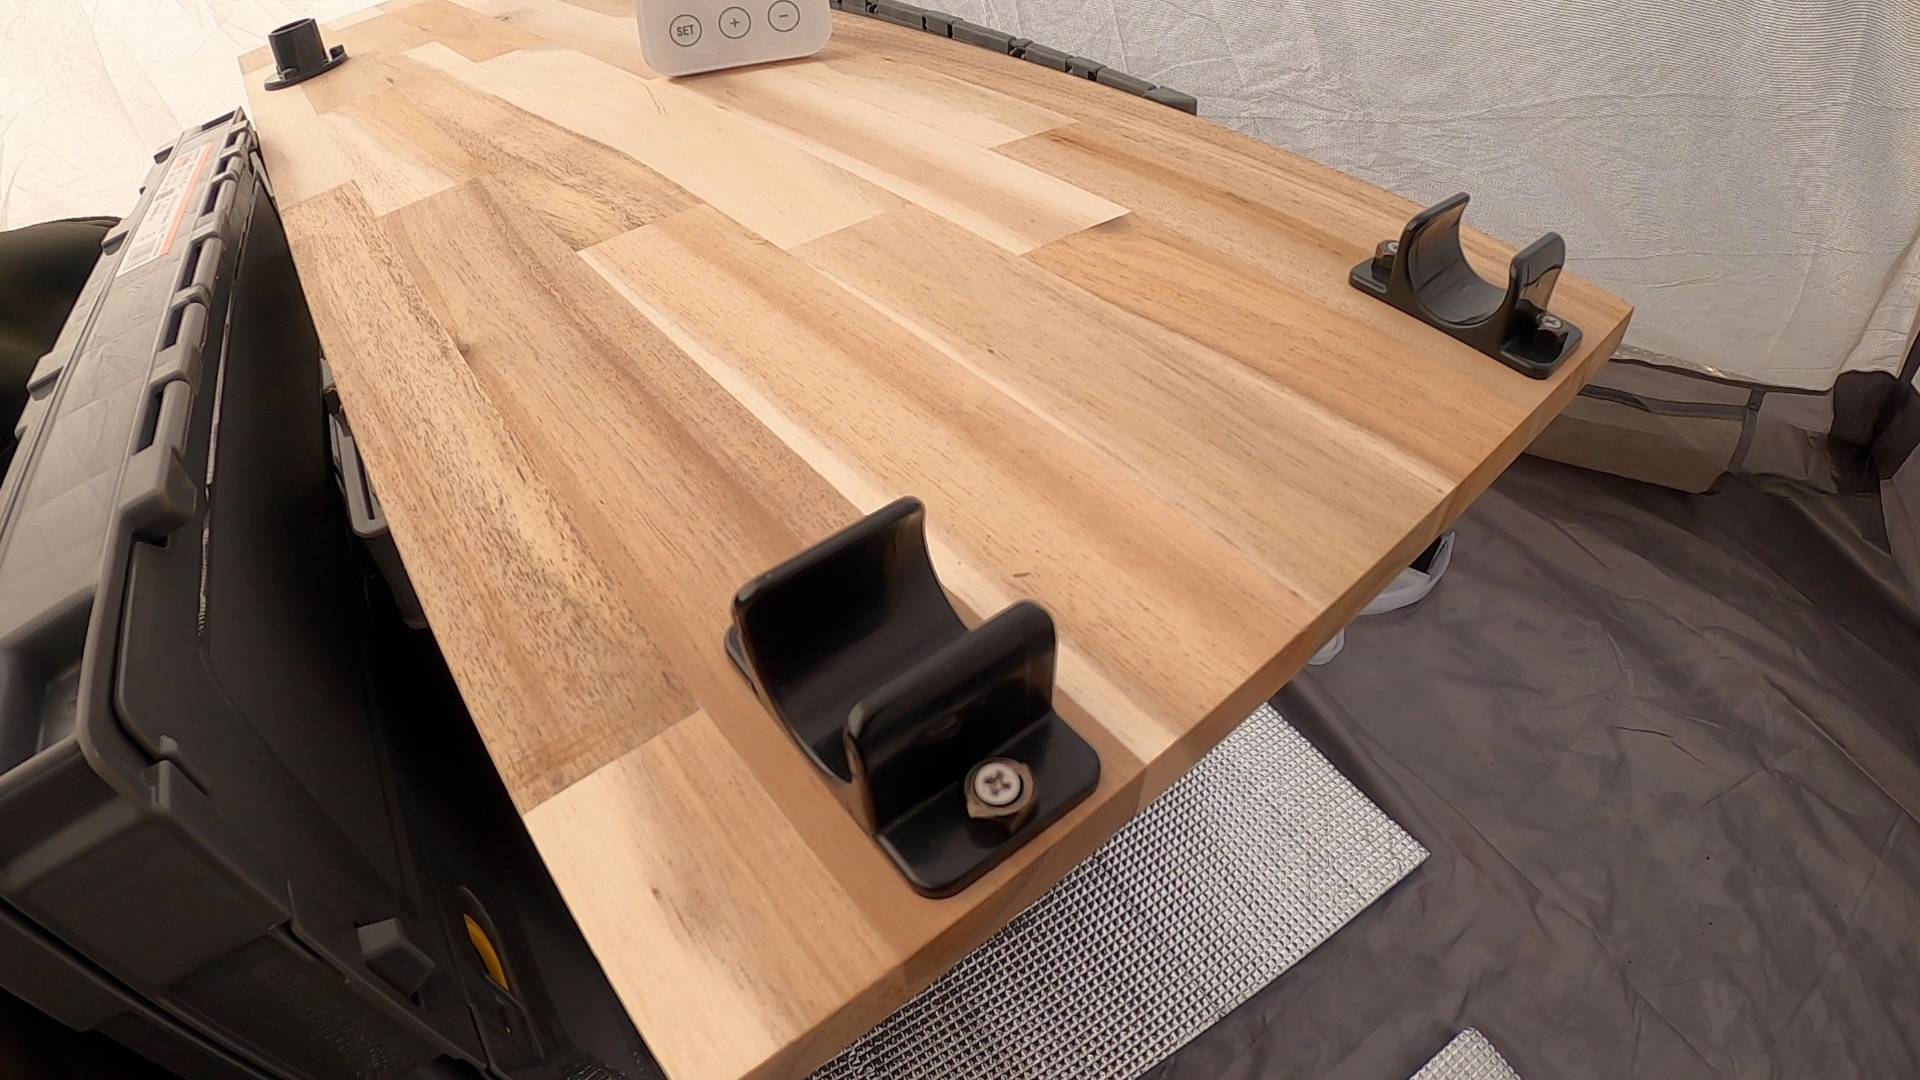 【軽バンカスタマイズ13】カインズのアカシアウッドで荷室のテーブルを作り直したやり直しカスタマイズ#1